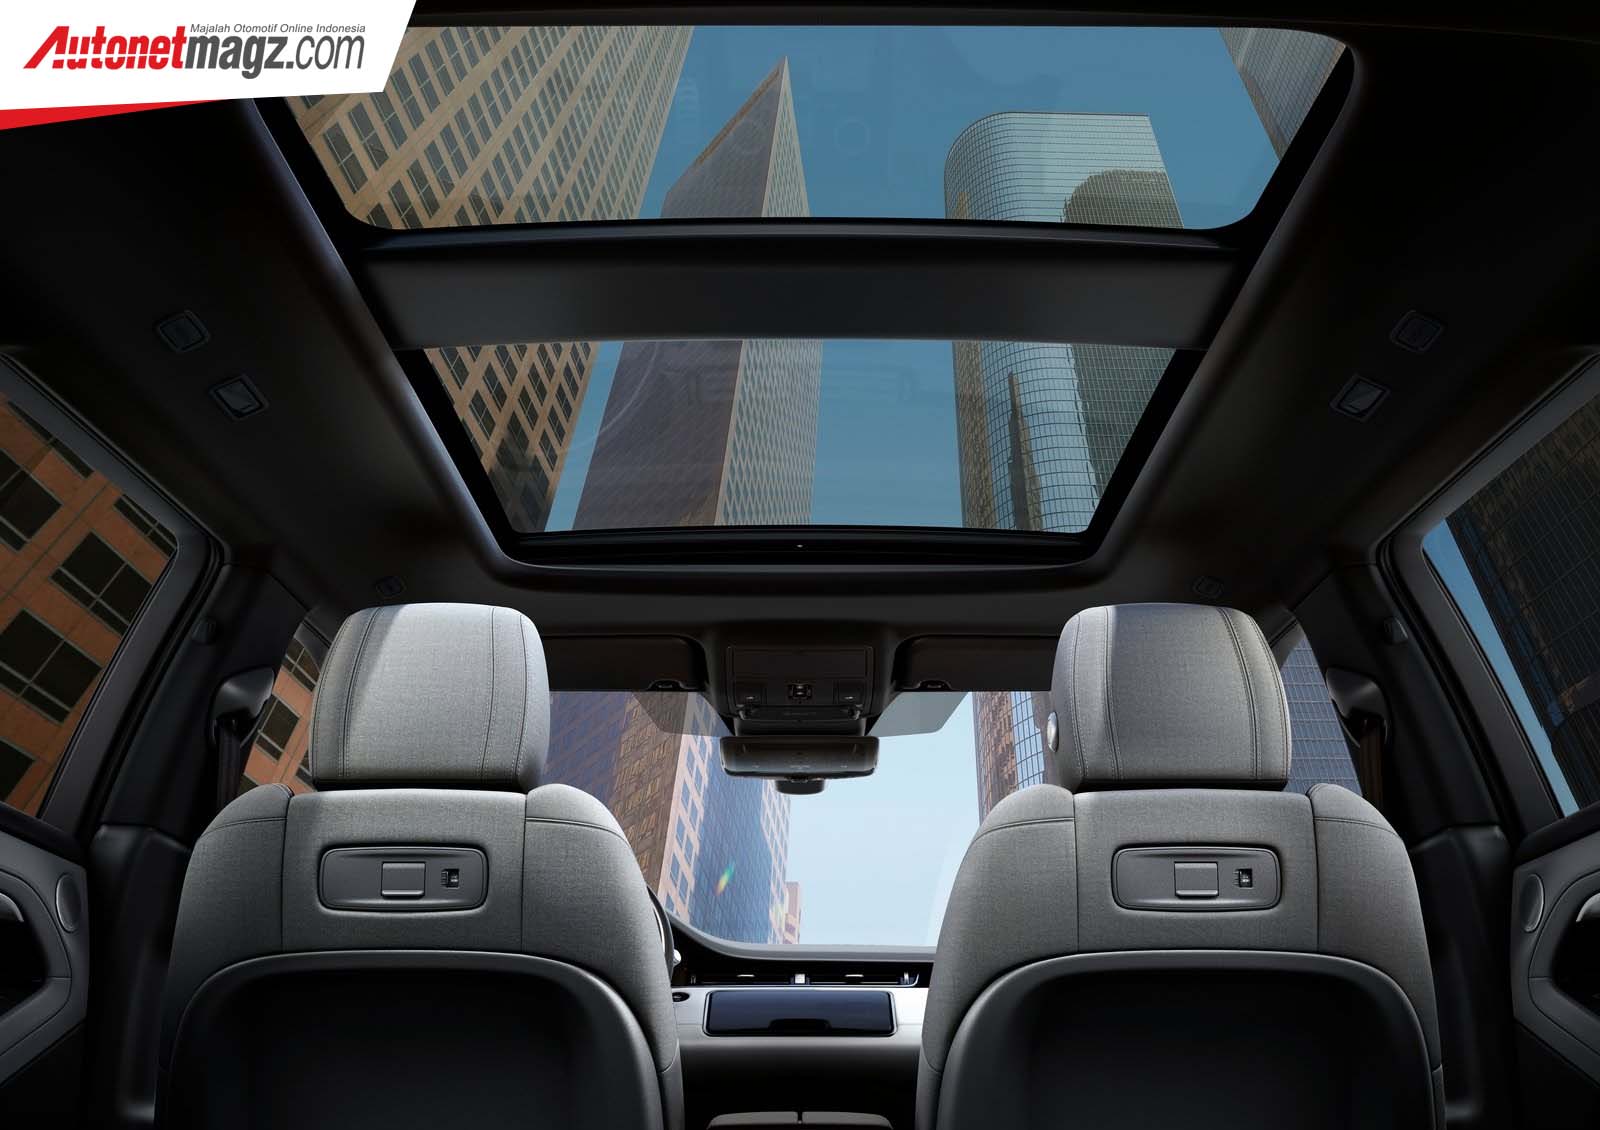 Berita, harga Range Rover Evoque 2020: Inilah Range Rover Evoque 2020, Velar Versi Pendek & Ceper